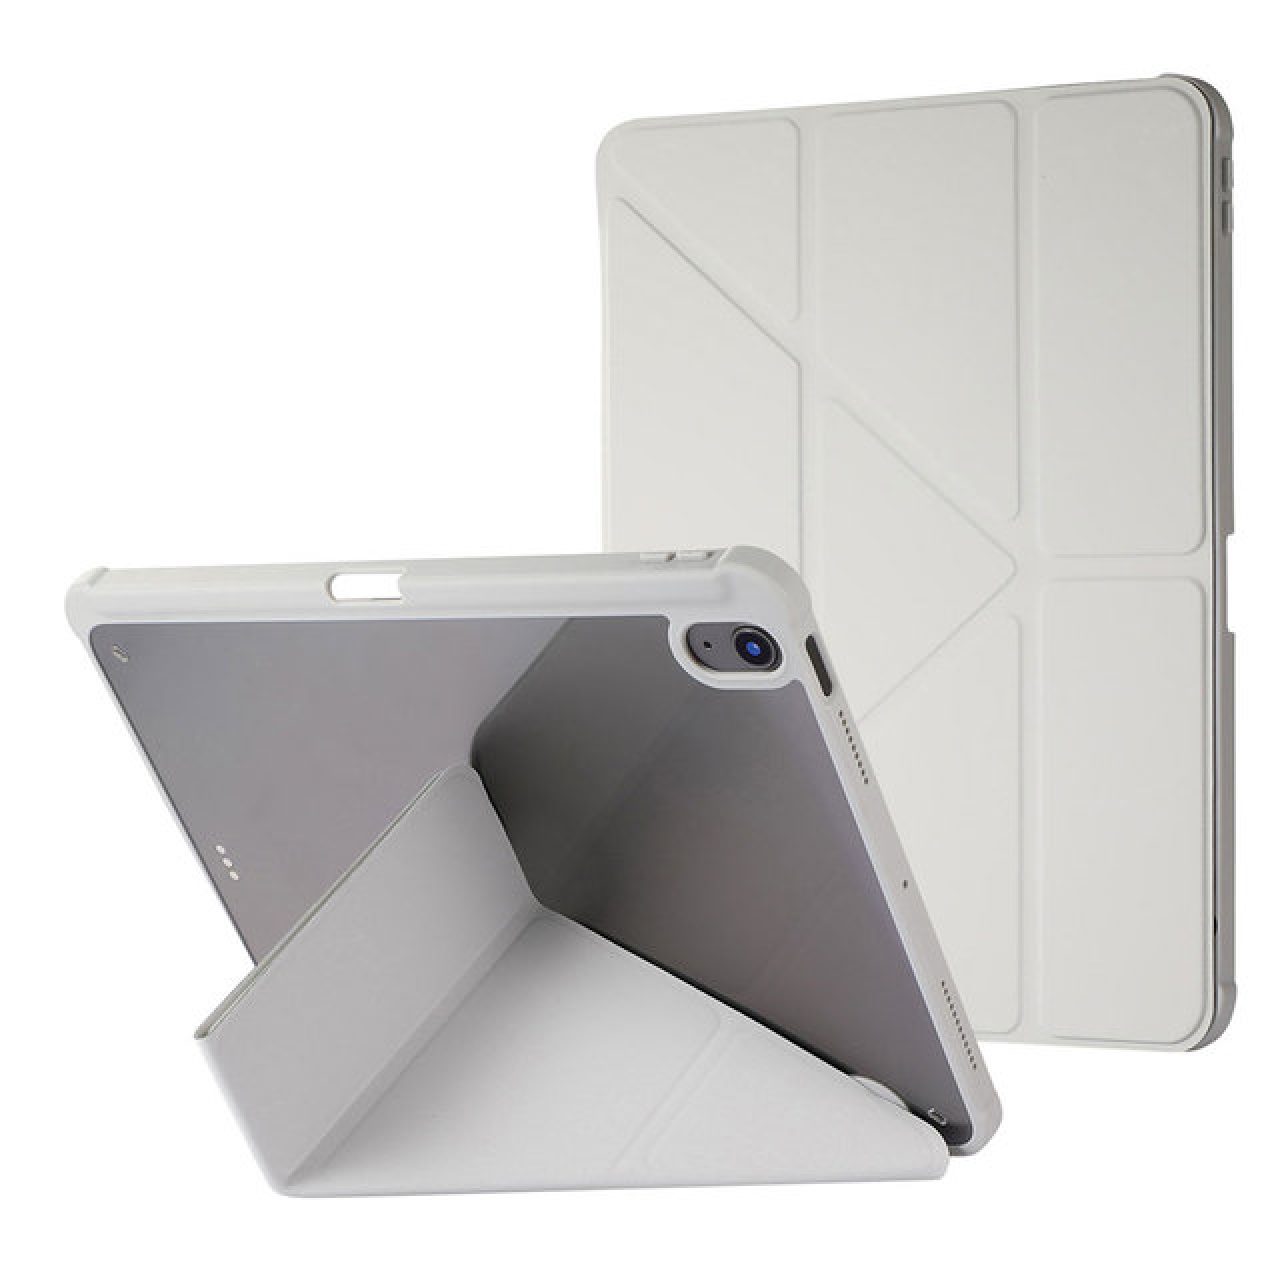 Θήκη Τάμπλετ Μαγνητική Apple iPad Mini 6 - 8.3 inch με Προστασία Κάμερας και Θέση για Γραφίδα - Tablet Case - Grey